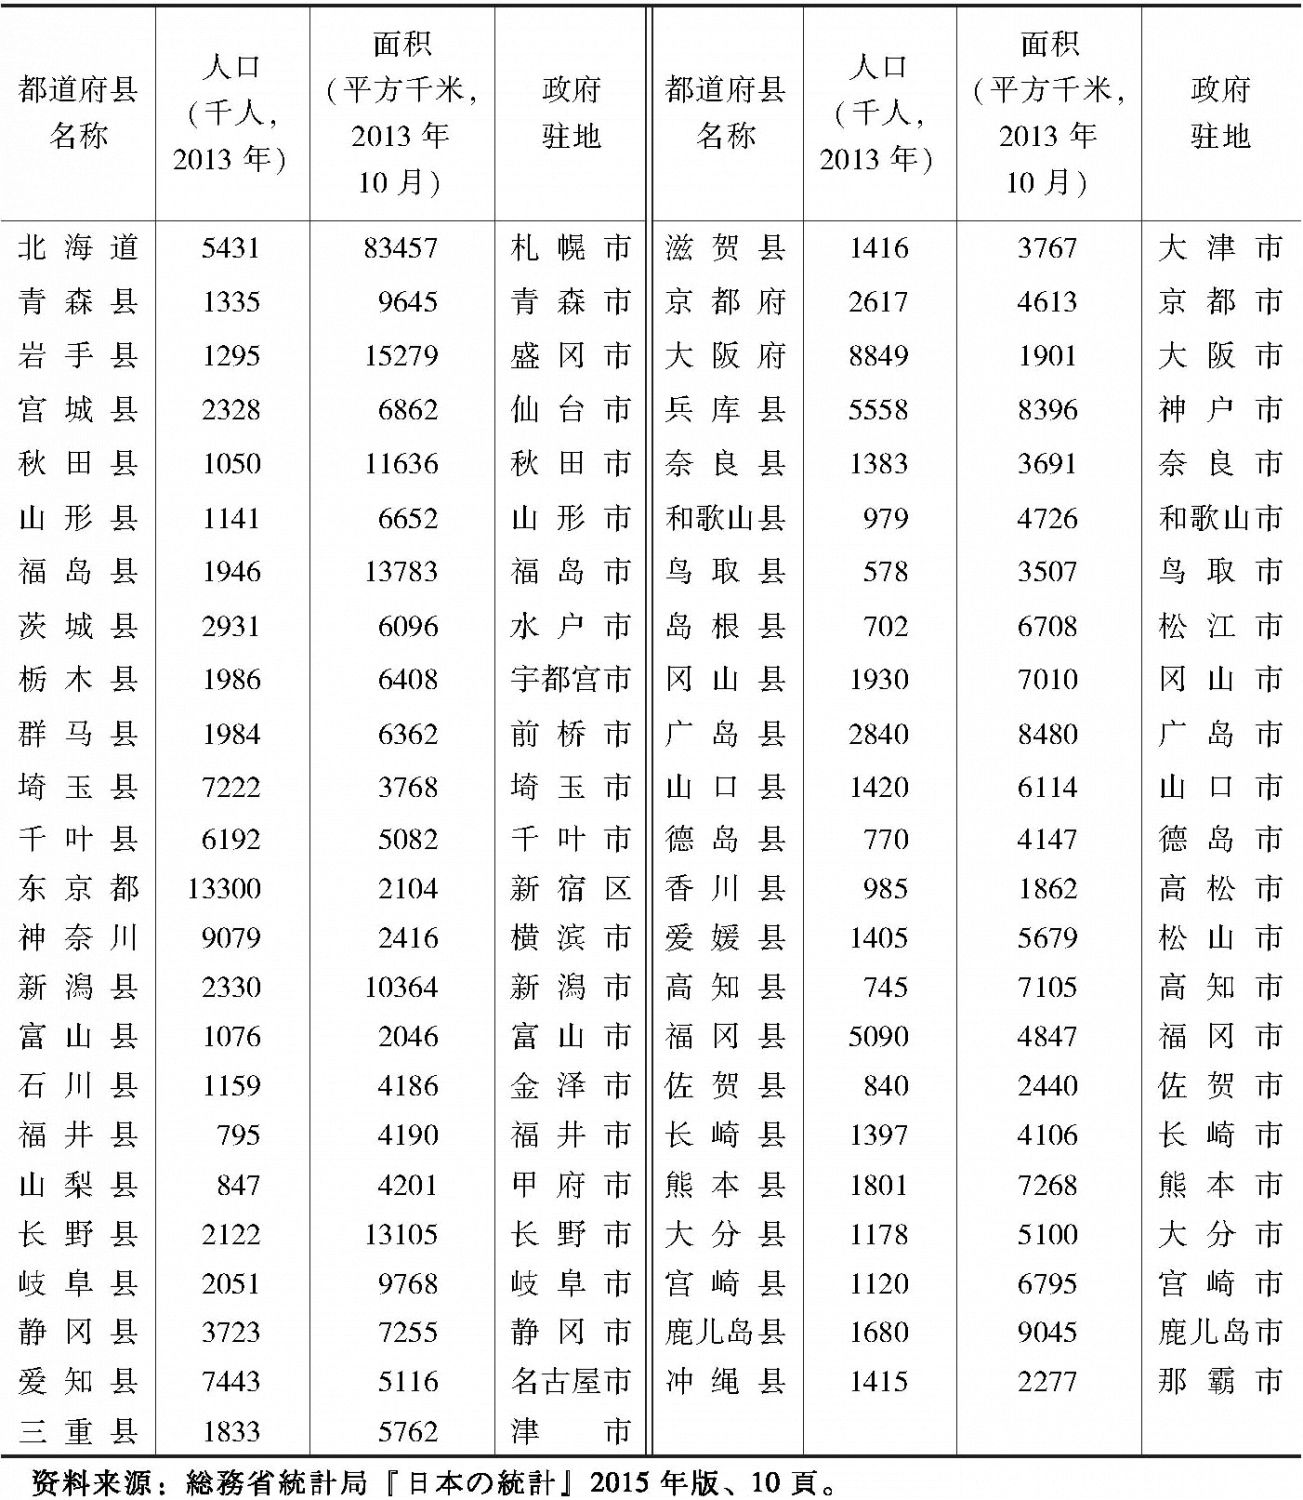 表1-5 日本各都道府县的人口、面积和政府驻地